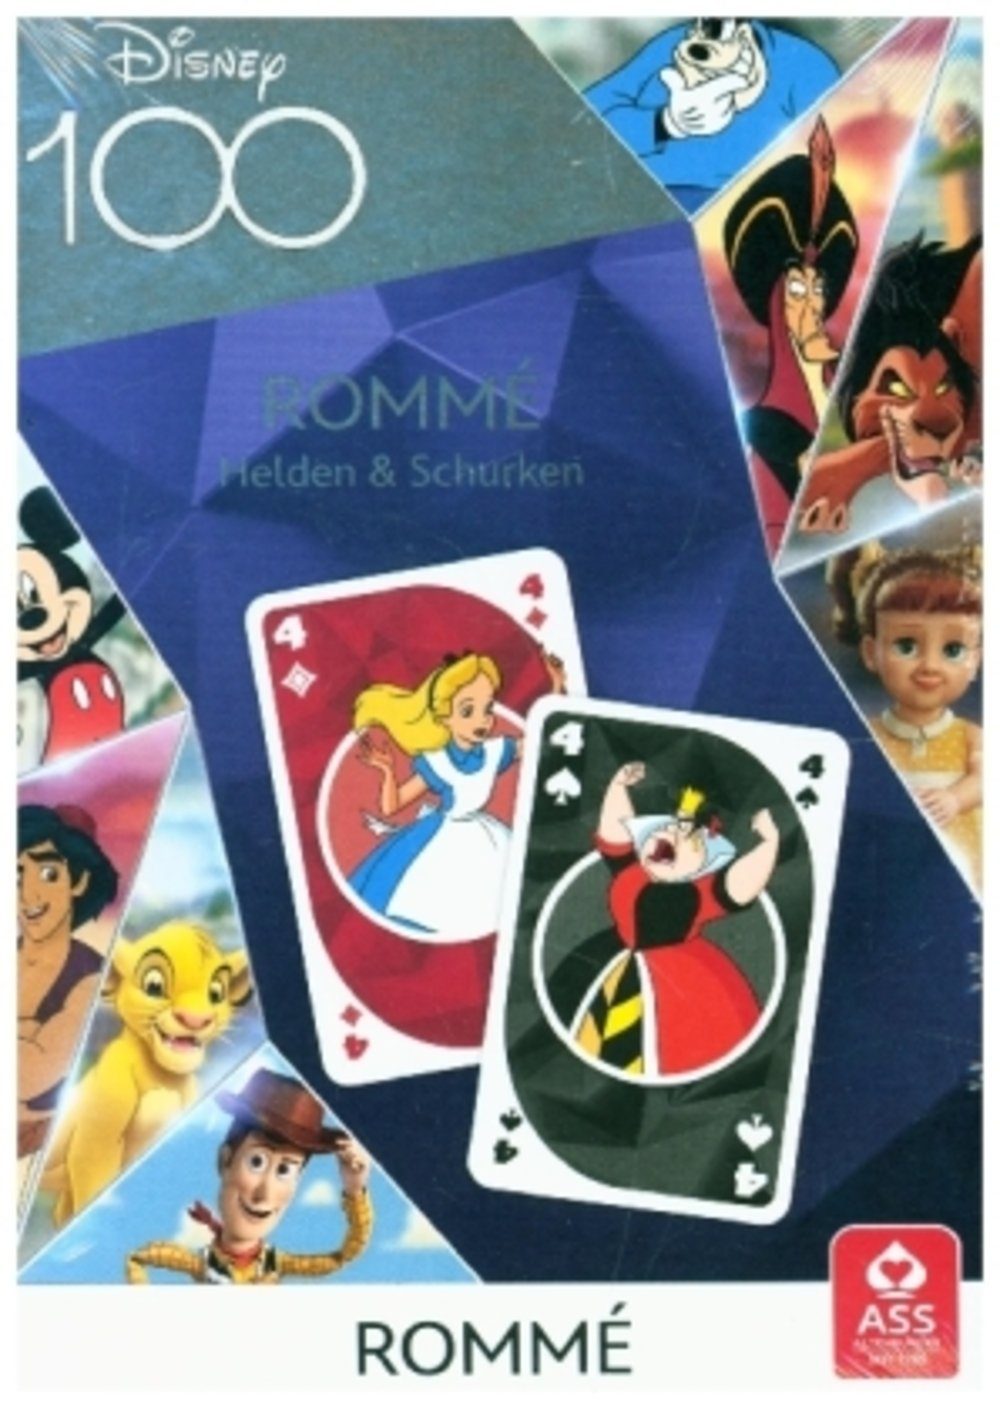 Cartamundi Spiel, Disney 100 - Rommé